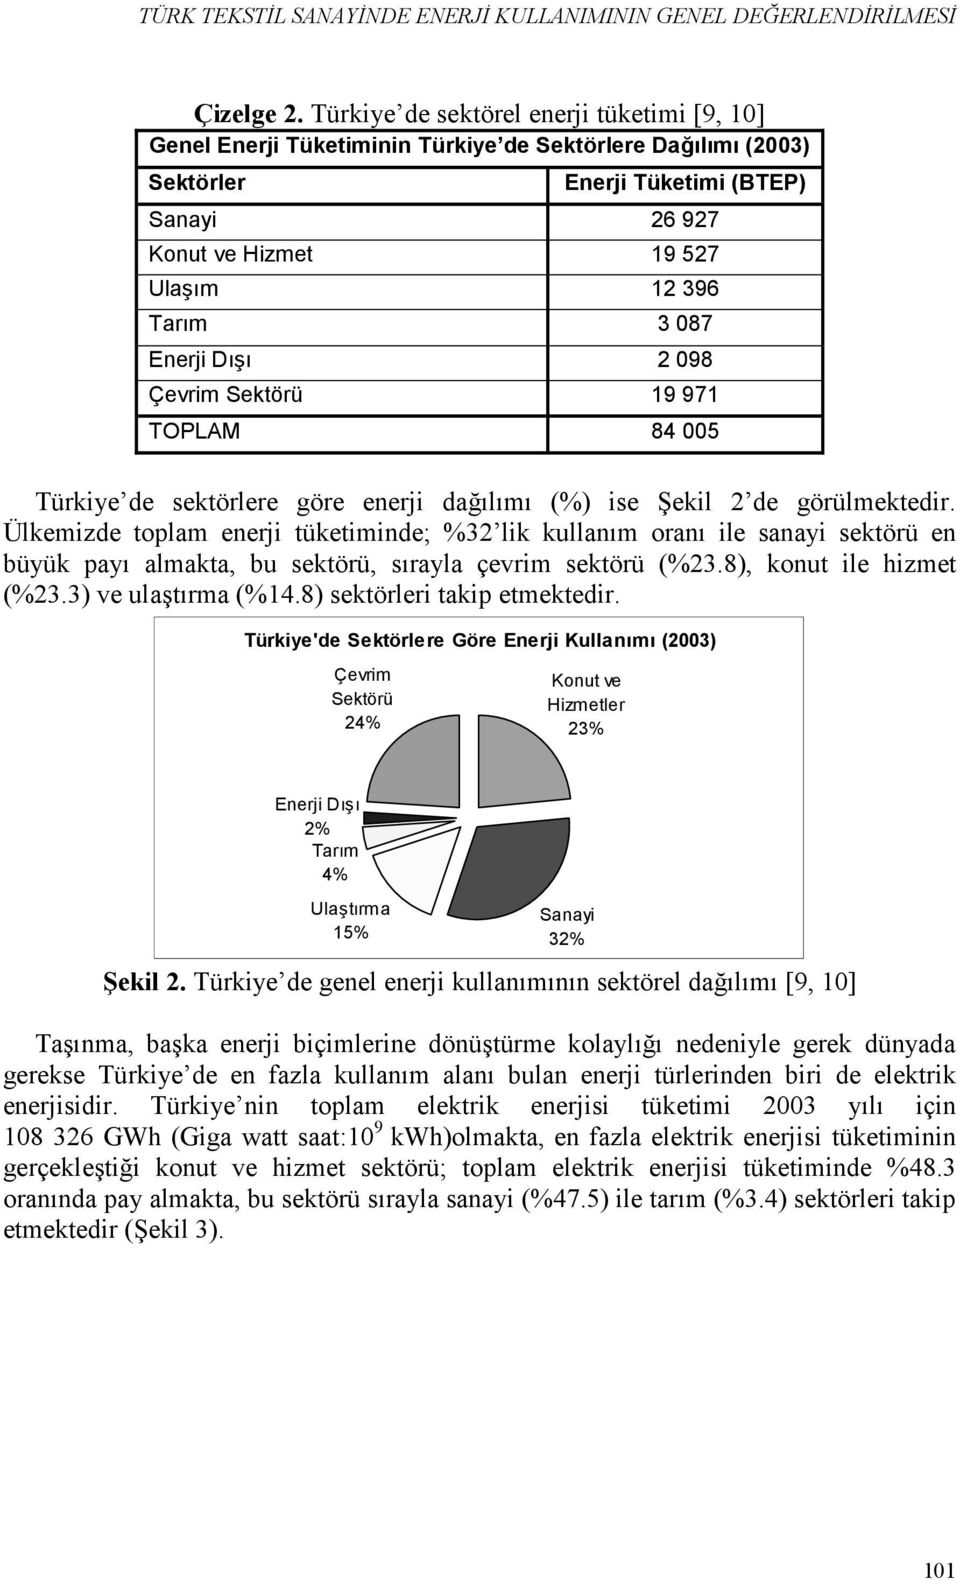 /m 12 396 Tar/m 3 087 Enerji D/./ 2 098 Çevrim Sektörü 19 971 TOPLAM 84 005 Türkiye de sektörlere göre enerji da$lm (%) ise Gekil 2 de görülmektedir.